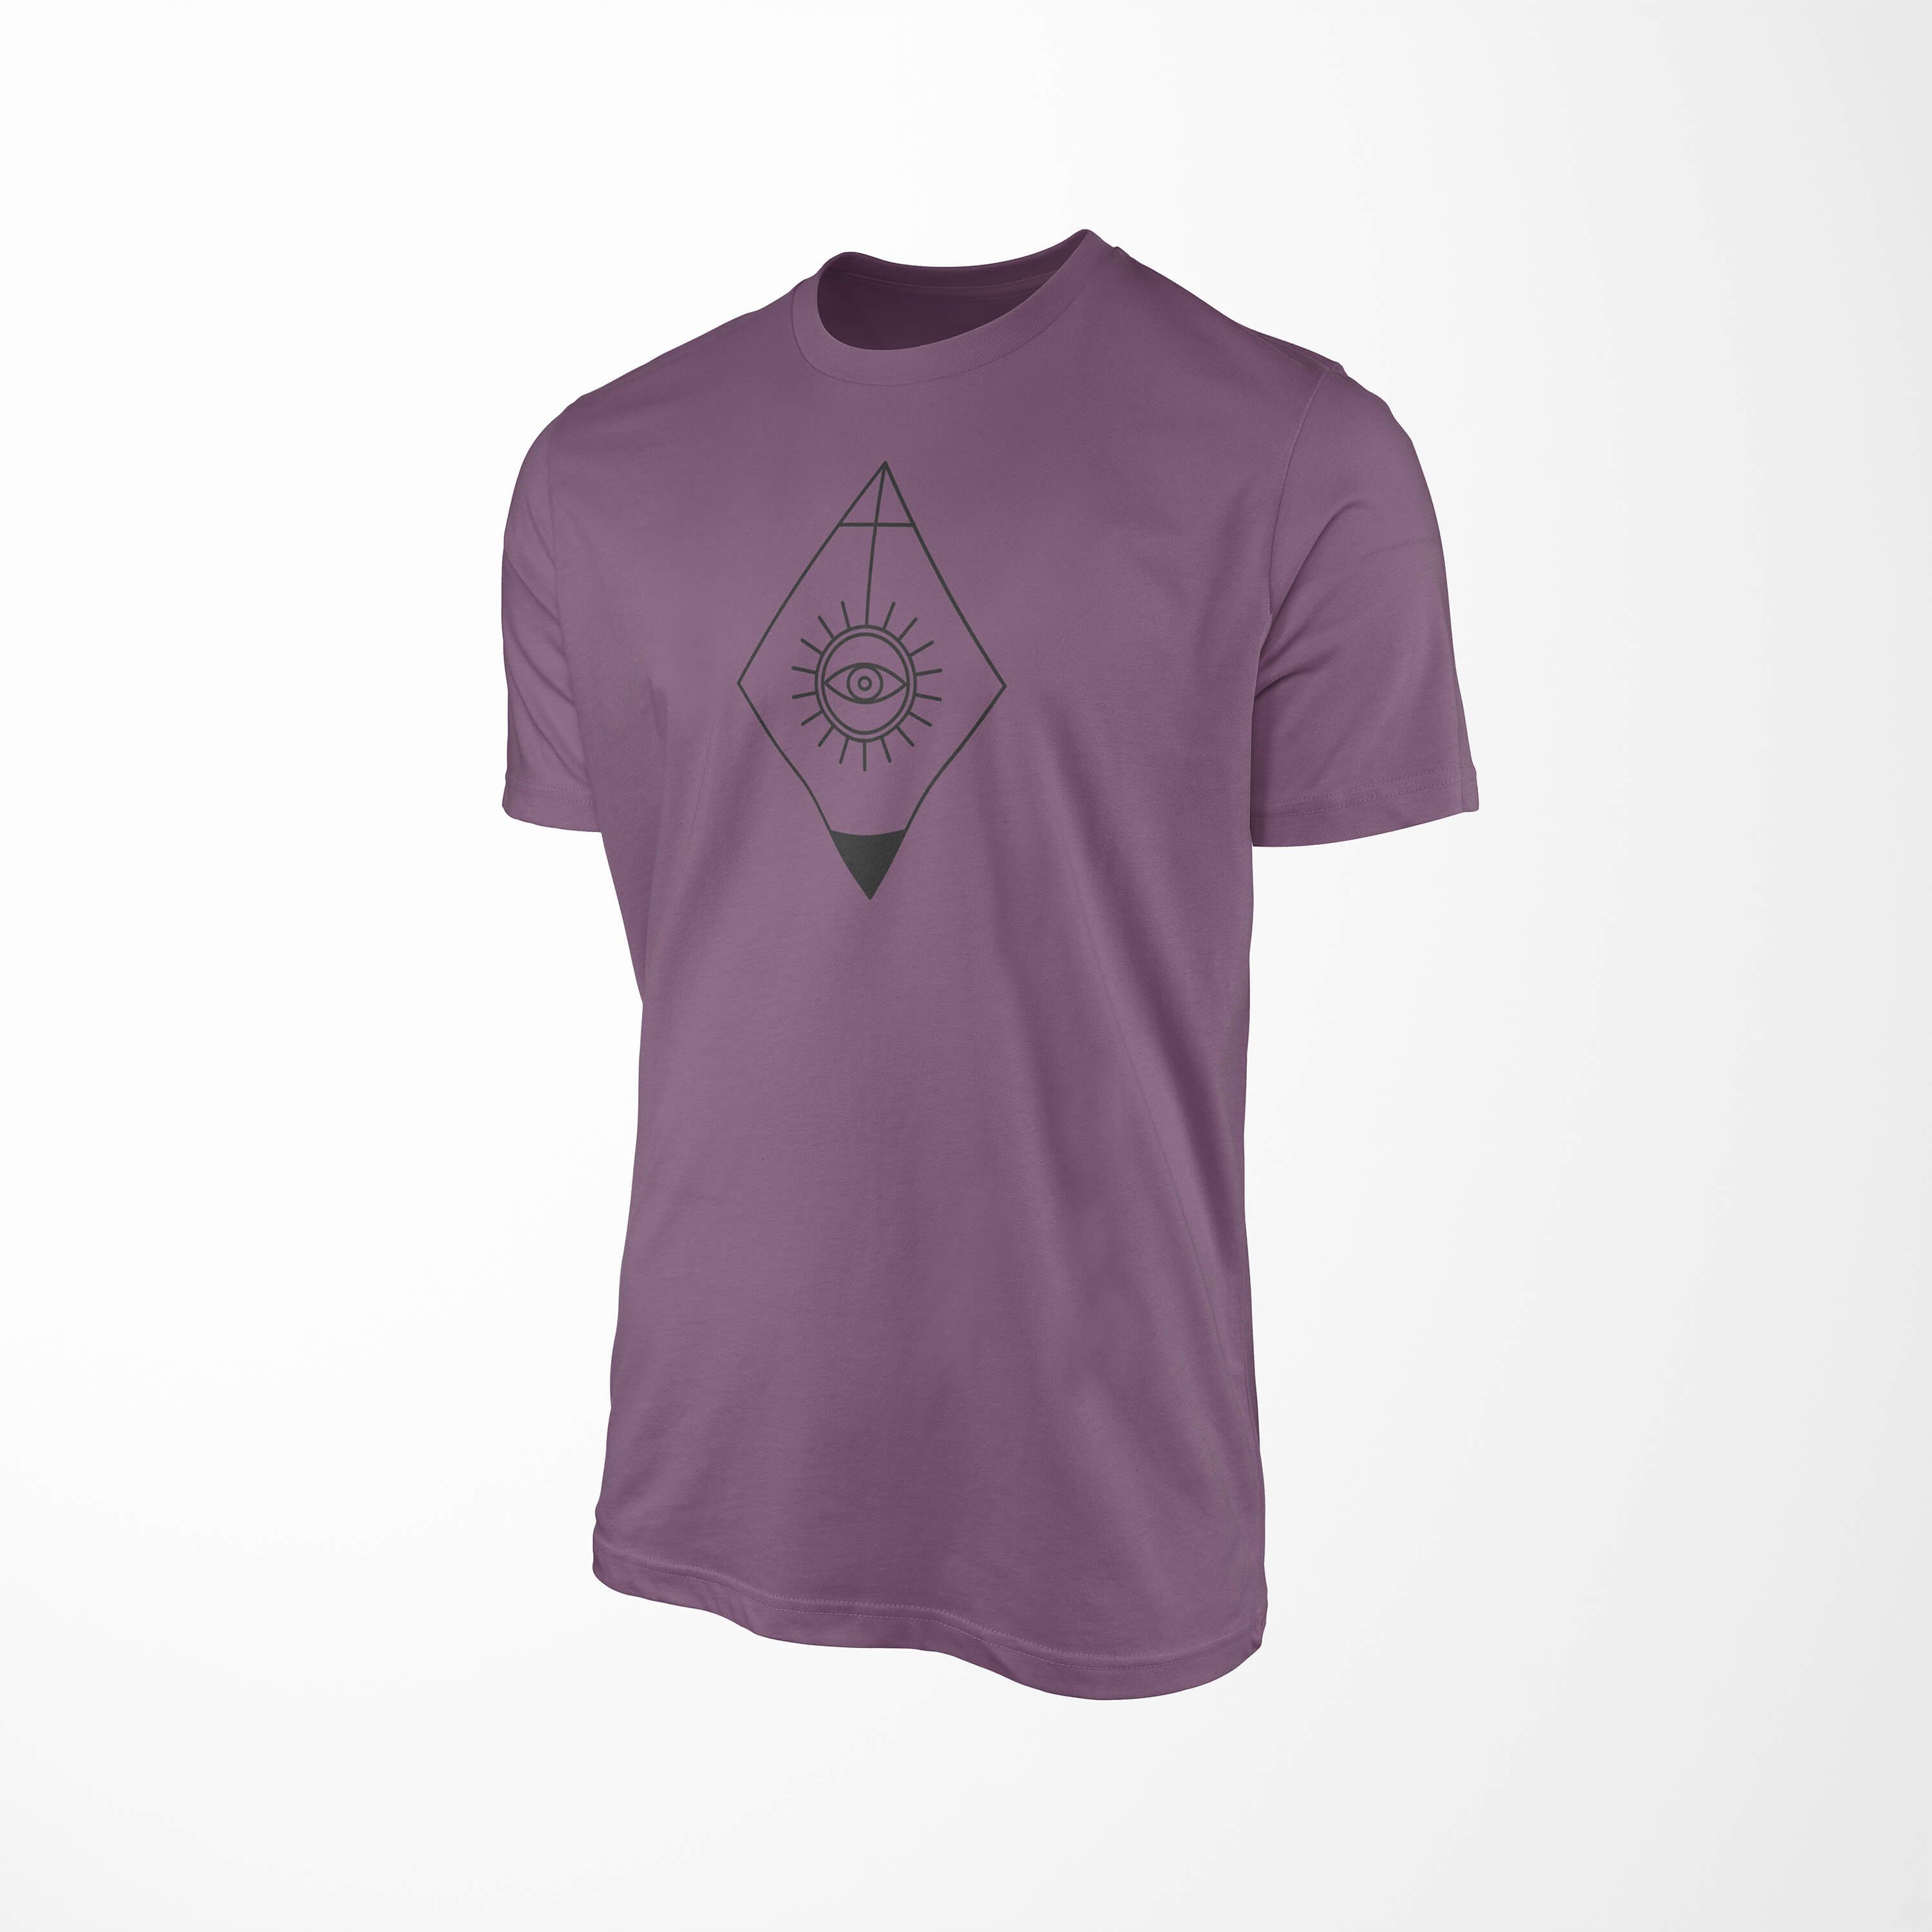 Sinus Art T-Shirt Premium T-Shirt No.0001 Symbole angenehmer Tragekomfort Shiraz feine Alchemy Struktur Serie